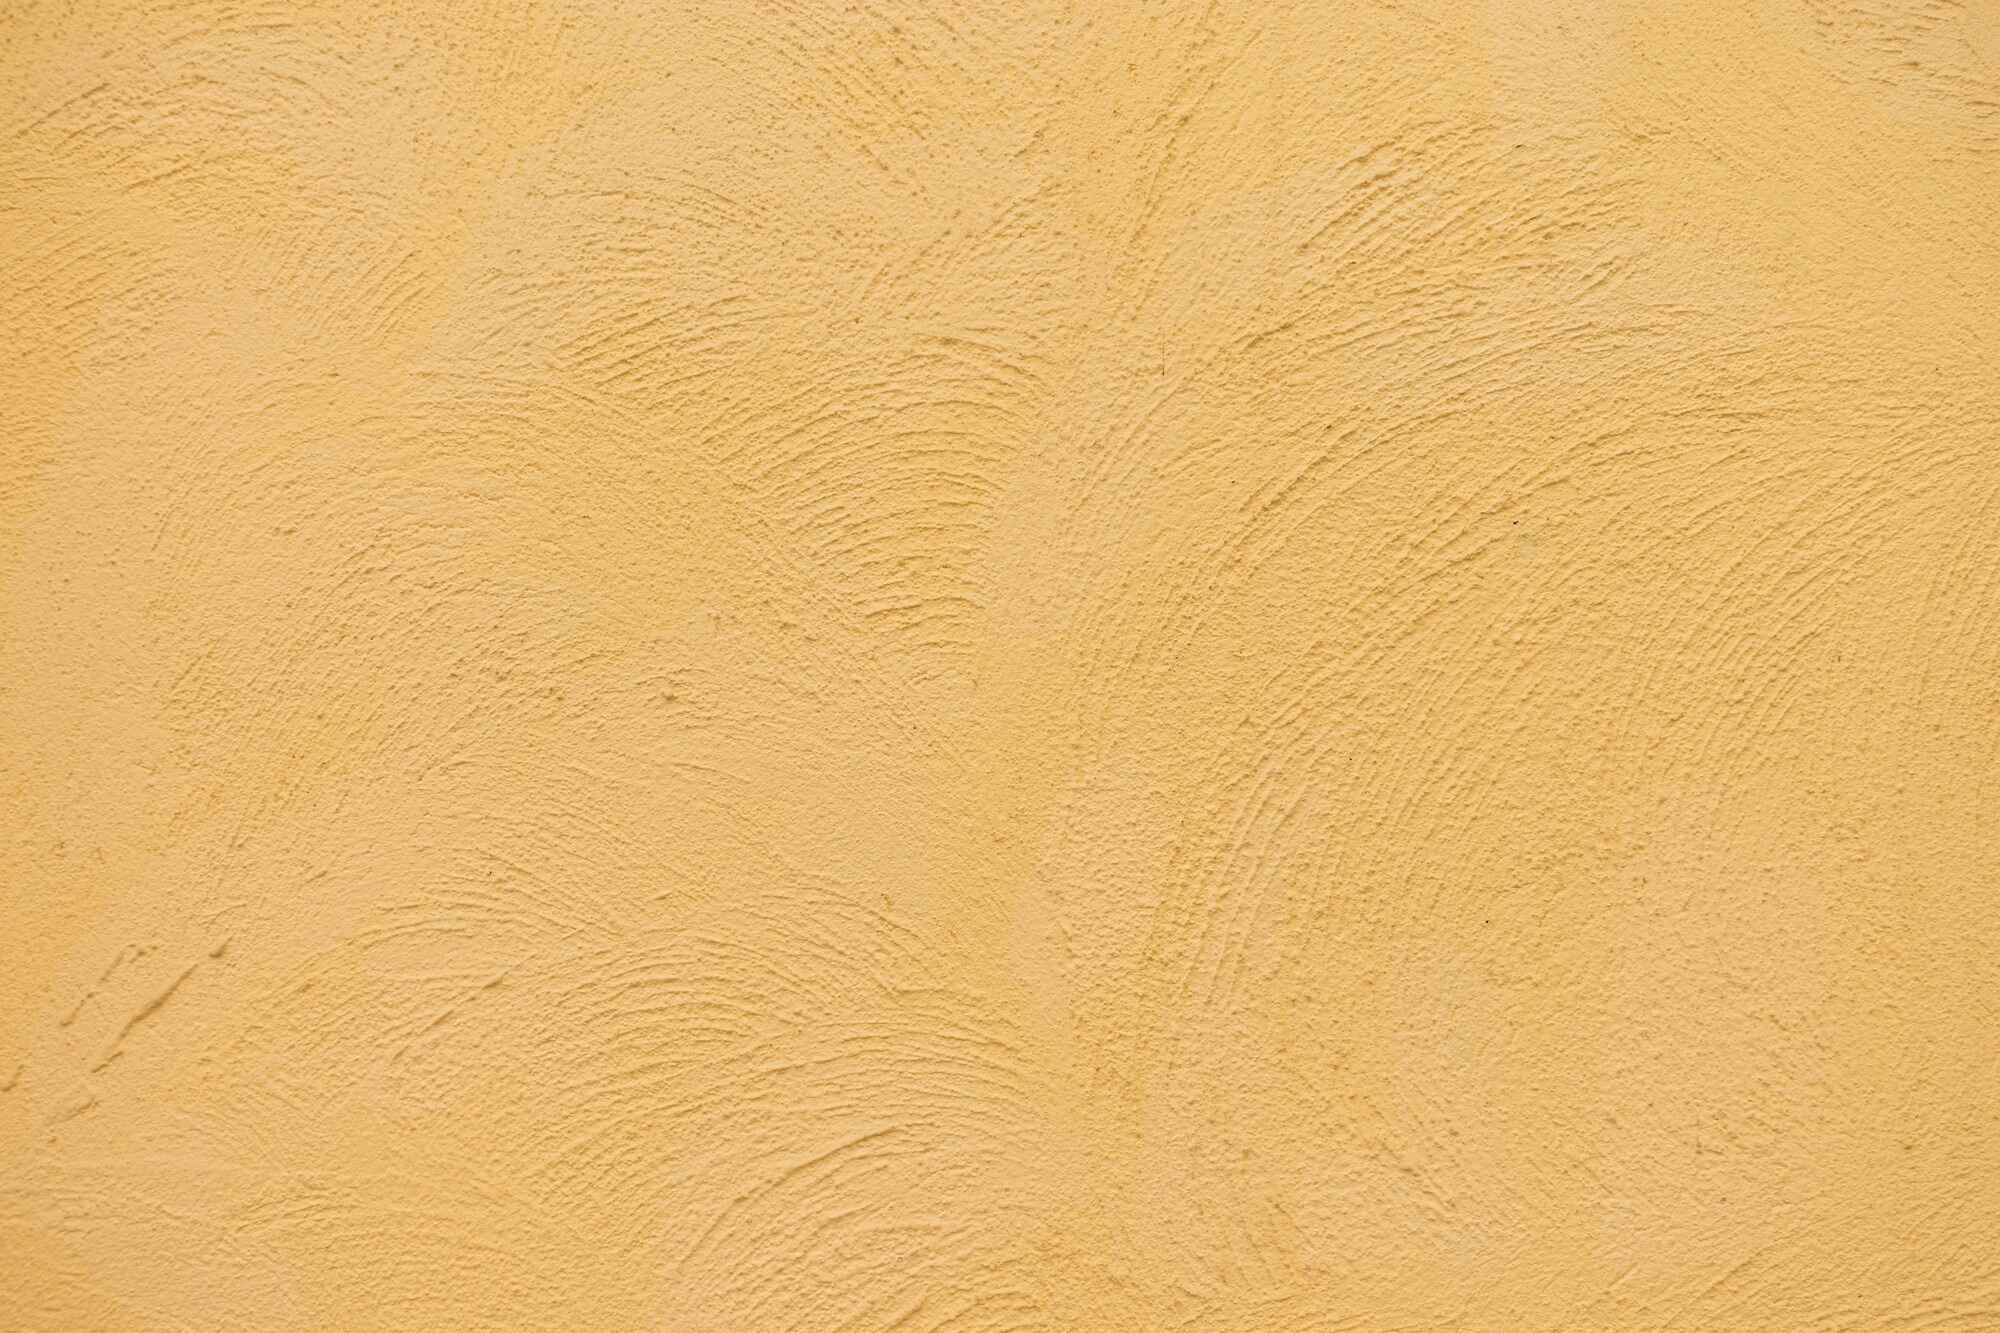 alter-brauner-wandhintergrund-schmutzbetonmauerhintergrund-mit-naturzementbeschaffenheit11.jpg